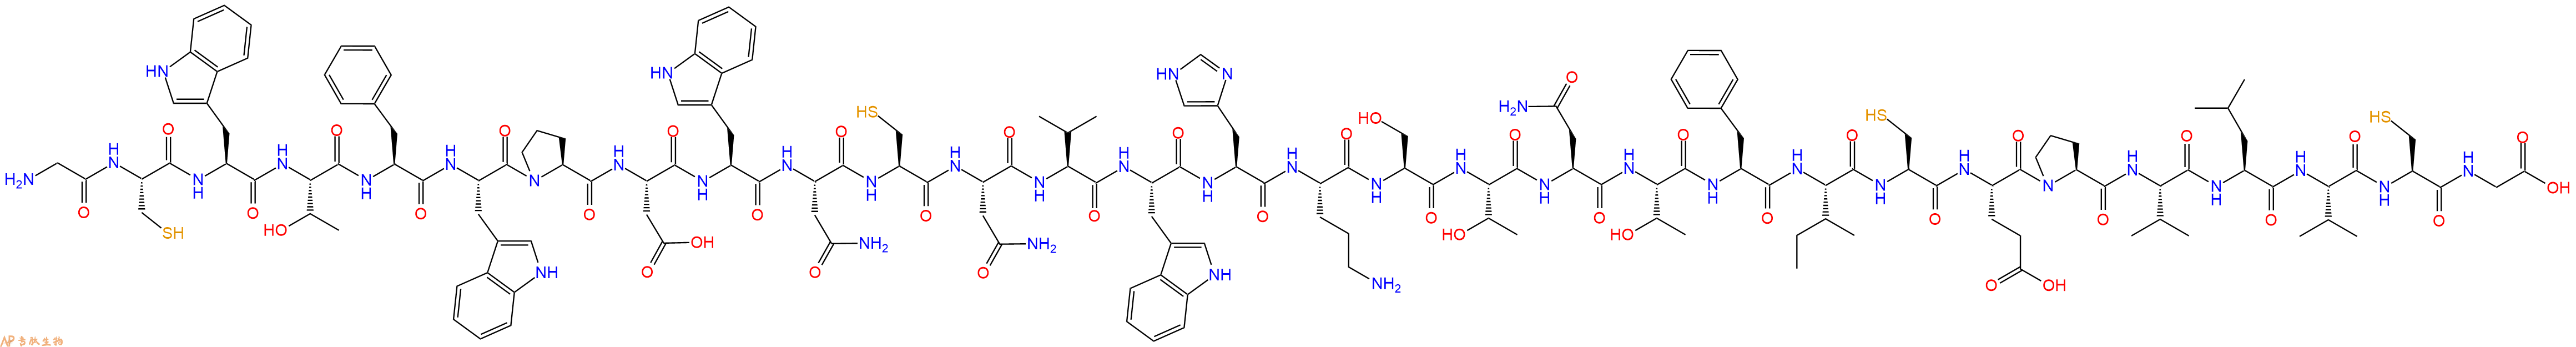 专肽生物产品H2N-Gly-Cys-Trp-Thr-Phe-Trp-Pro-Asp-Trp-Asn-Cys-Asn-Val-Trp-His-Orn-Ser-Thr-Asn-Thr-Phe-Ile-Cys-Glu-Pro-Val-Leu-Val-Cys-Gly-COOH